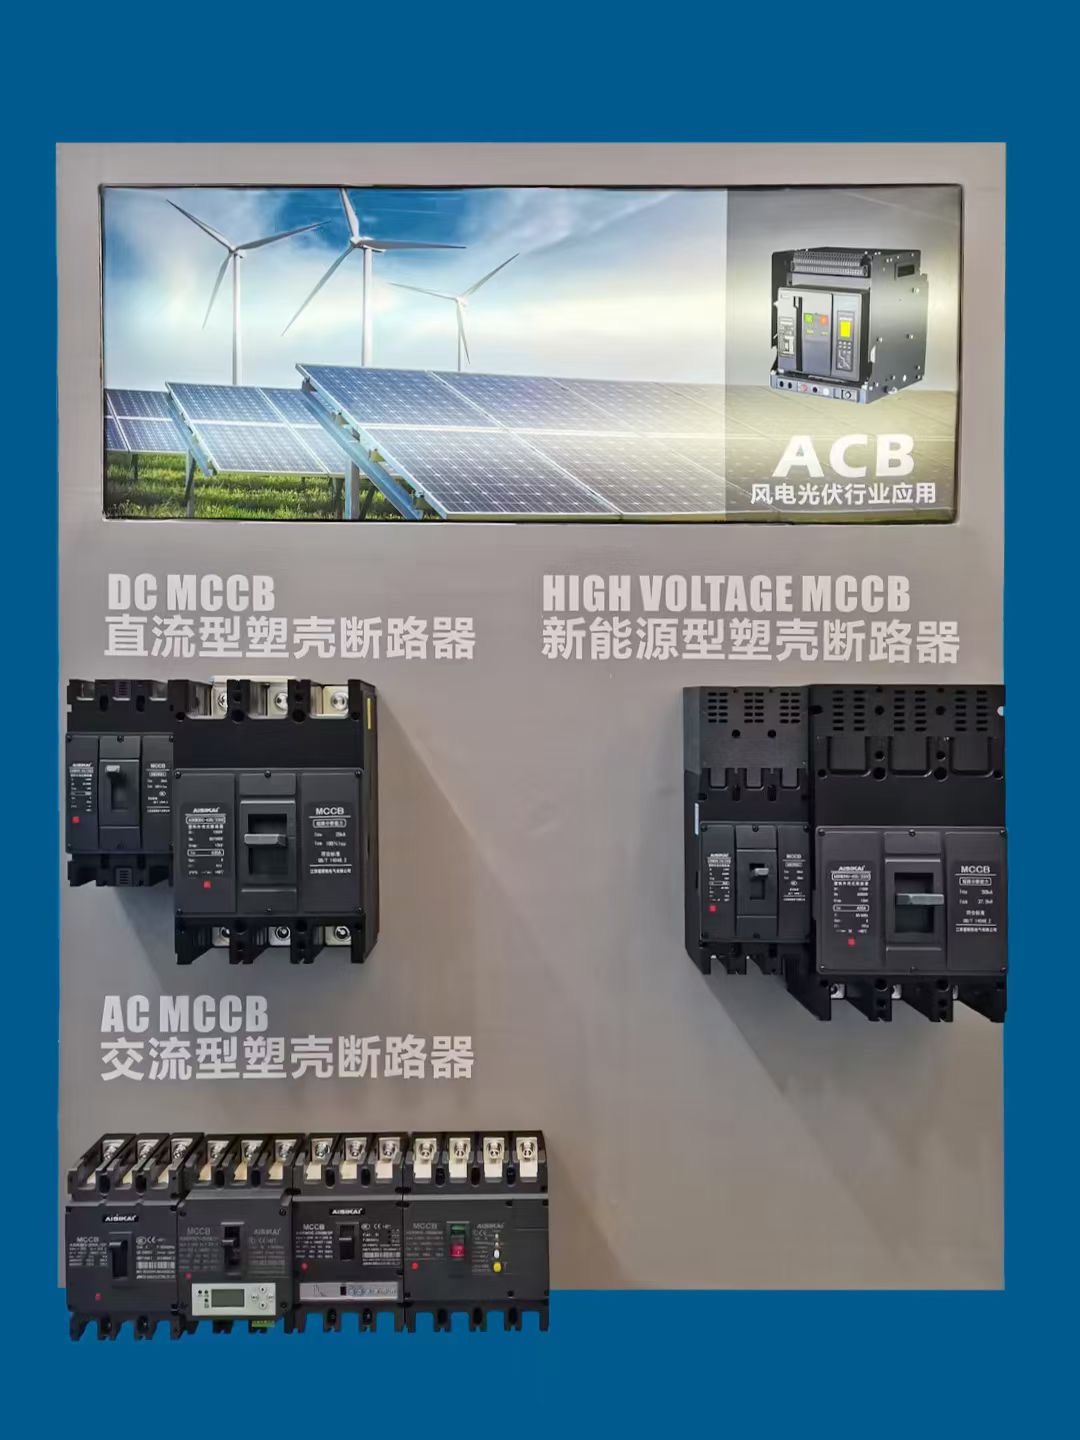 يشارك Aisikai في معرض SNEC2023 الدولي لتخزين الطاقة